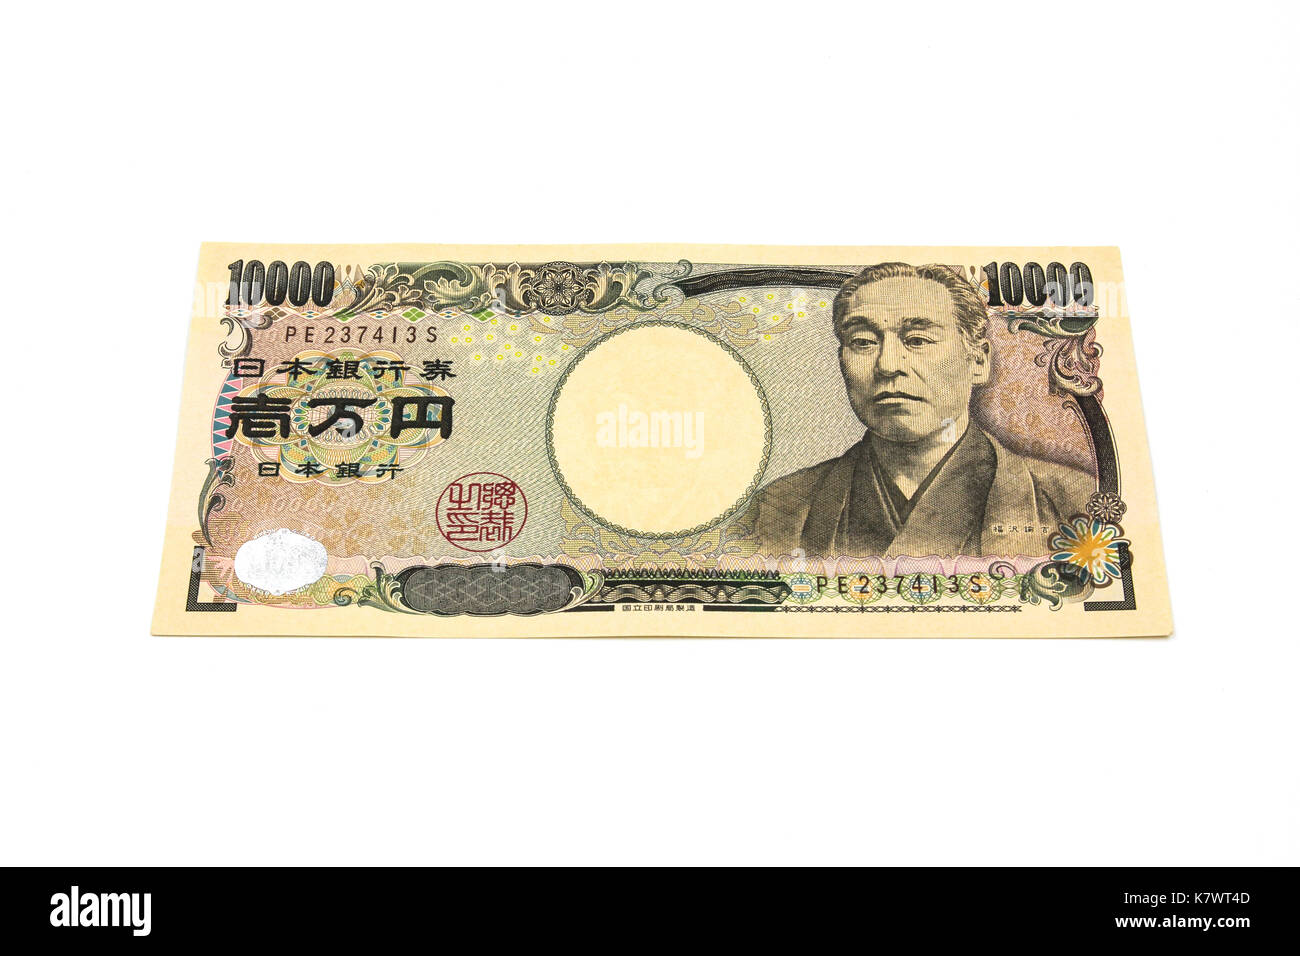 Ten thousands japanese yen bill Stock Photo